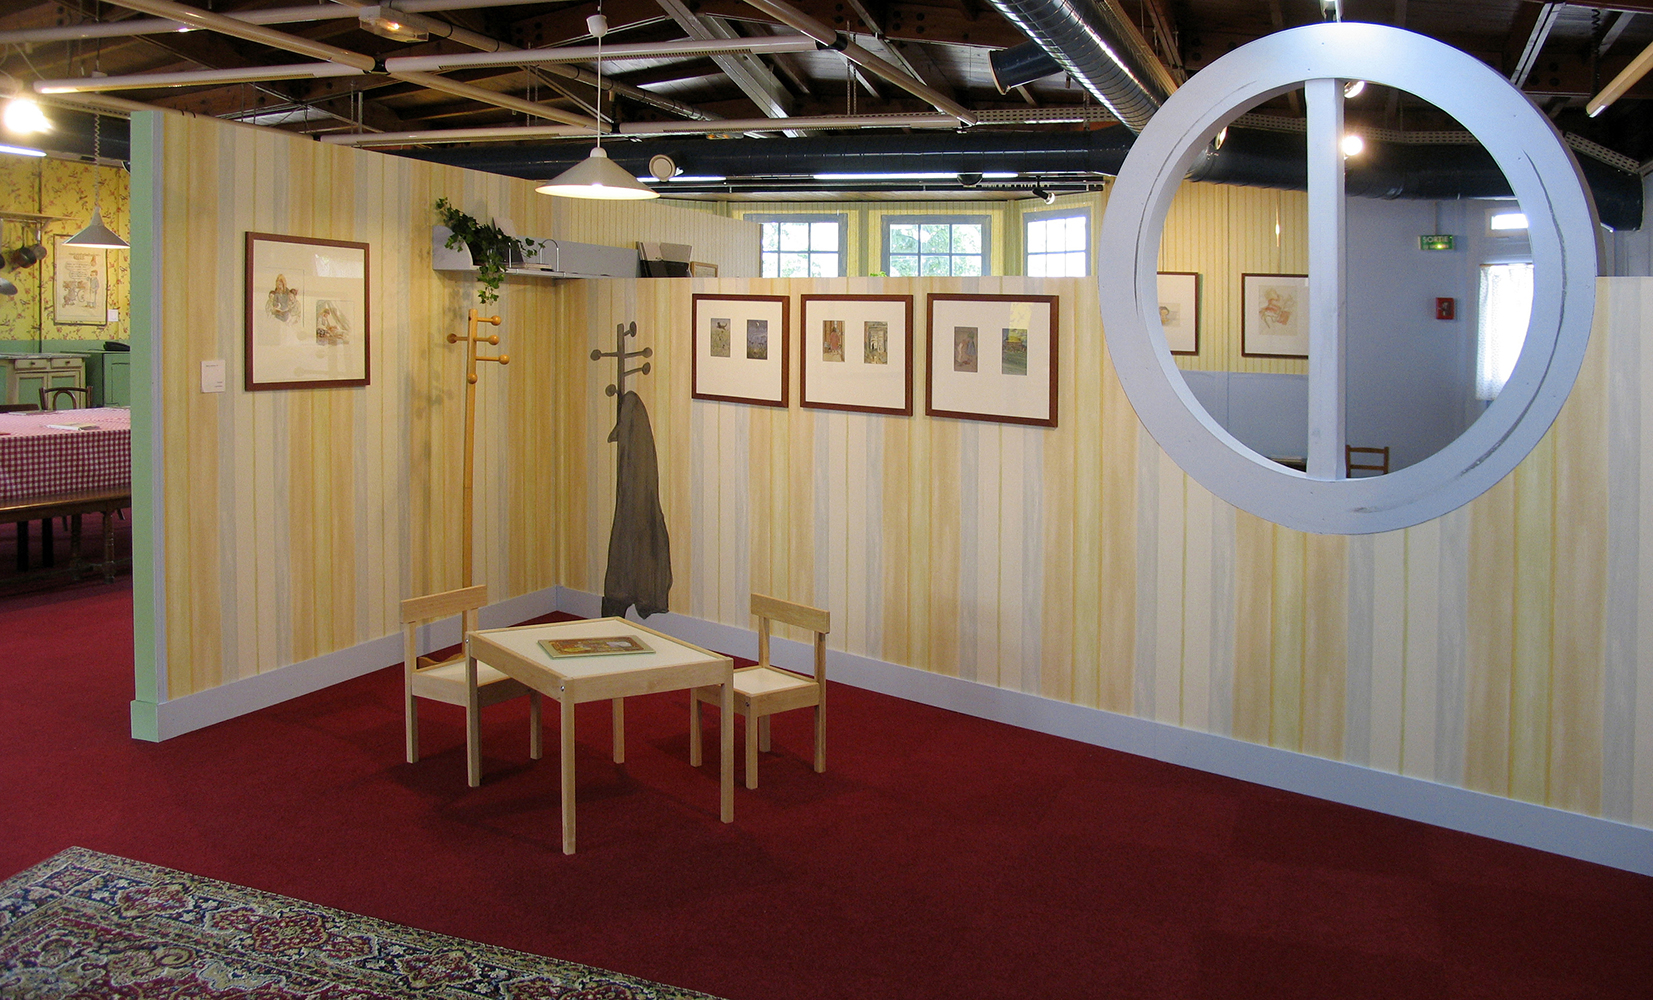 13 mai 2006 - Inauguration de l'exposition rétrospective Philippe DUMAS "Coquins comme il faut" à la Bibliothèque de Pantin